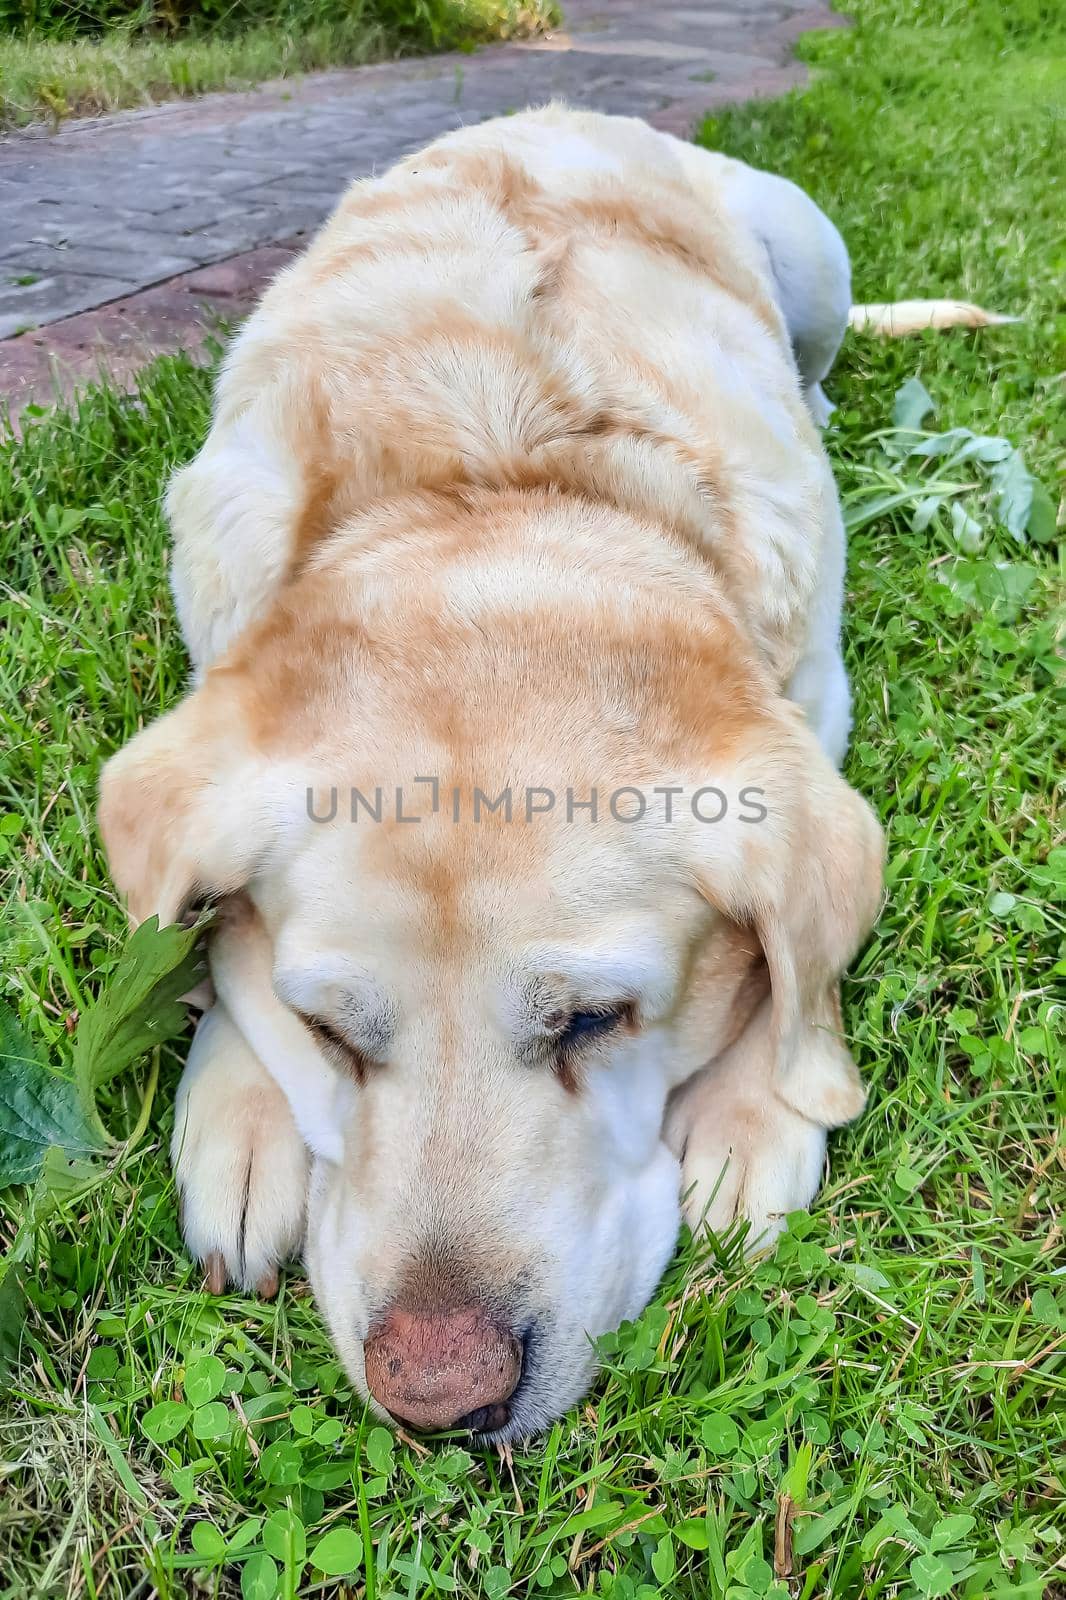 A beautiful labrador lies on the green grass